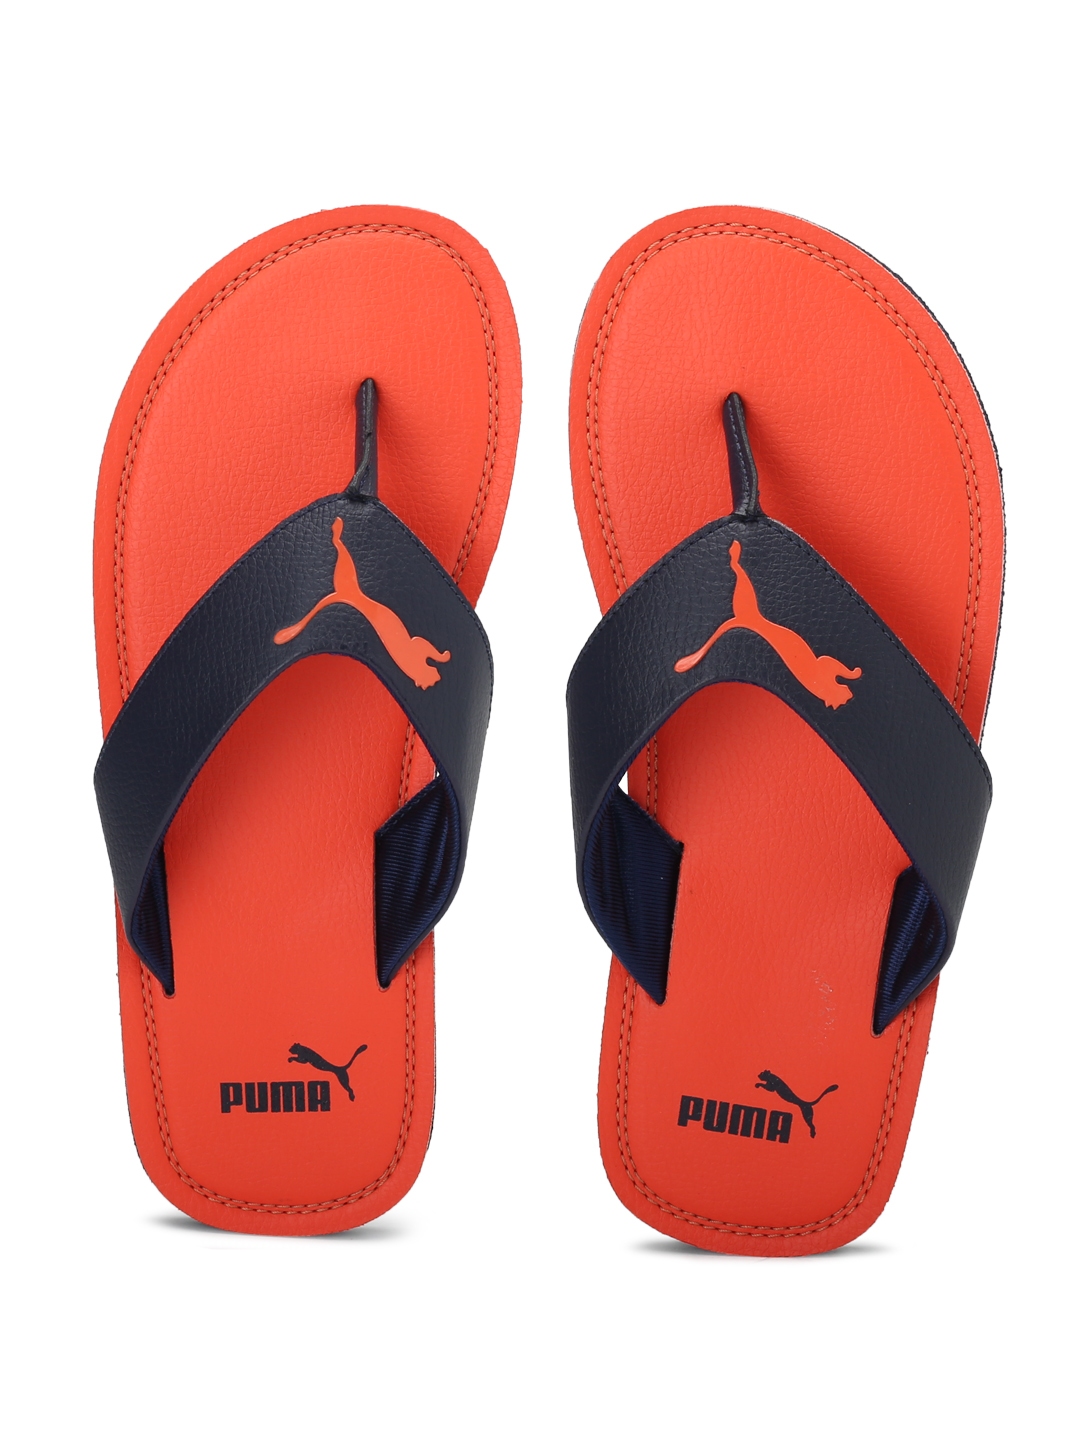 puma flash cat idp slippers - 60% OFF 